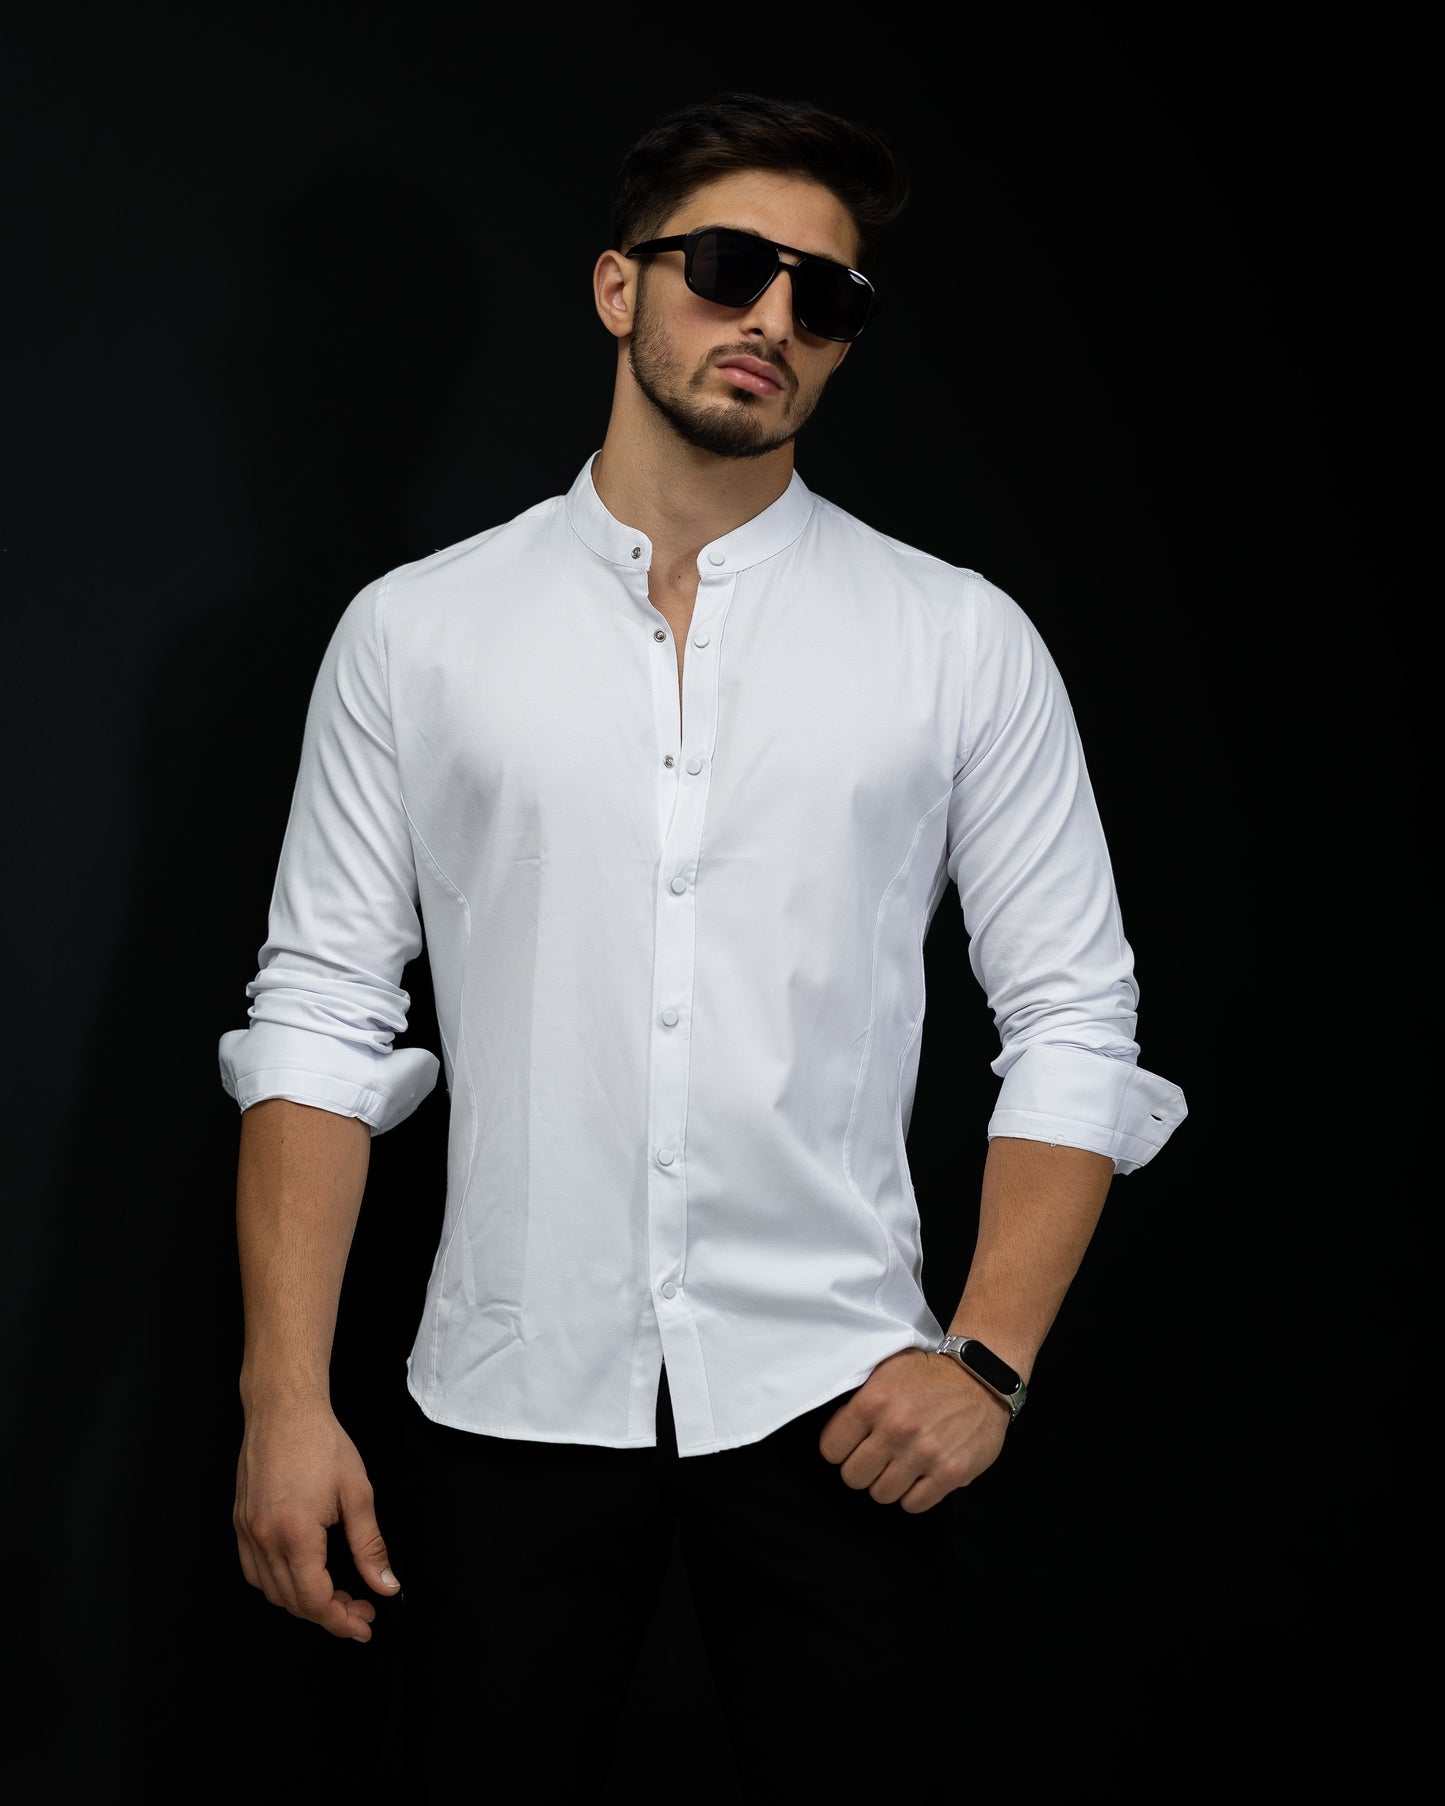 Базова біла сорочка з коміром стійка на ґудзиках M L XL XXL 3XL 01-30-401